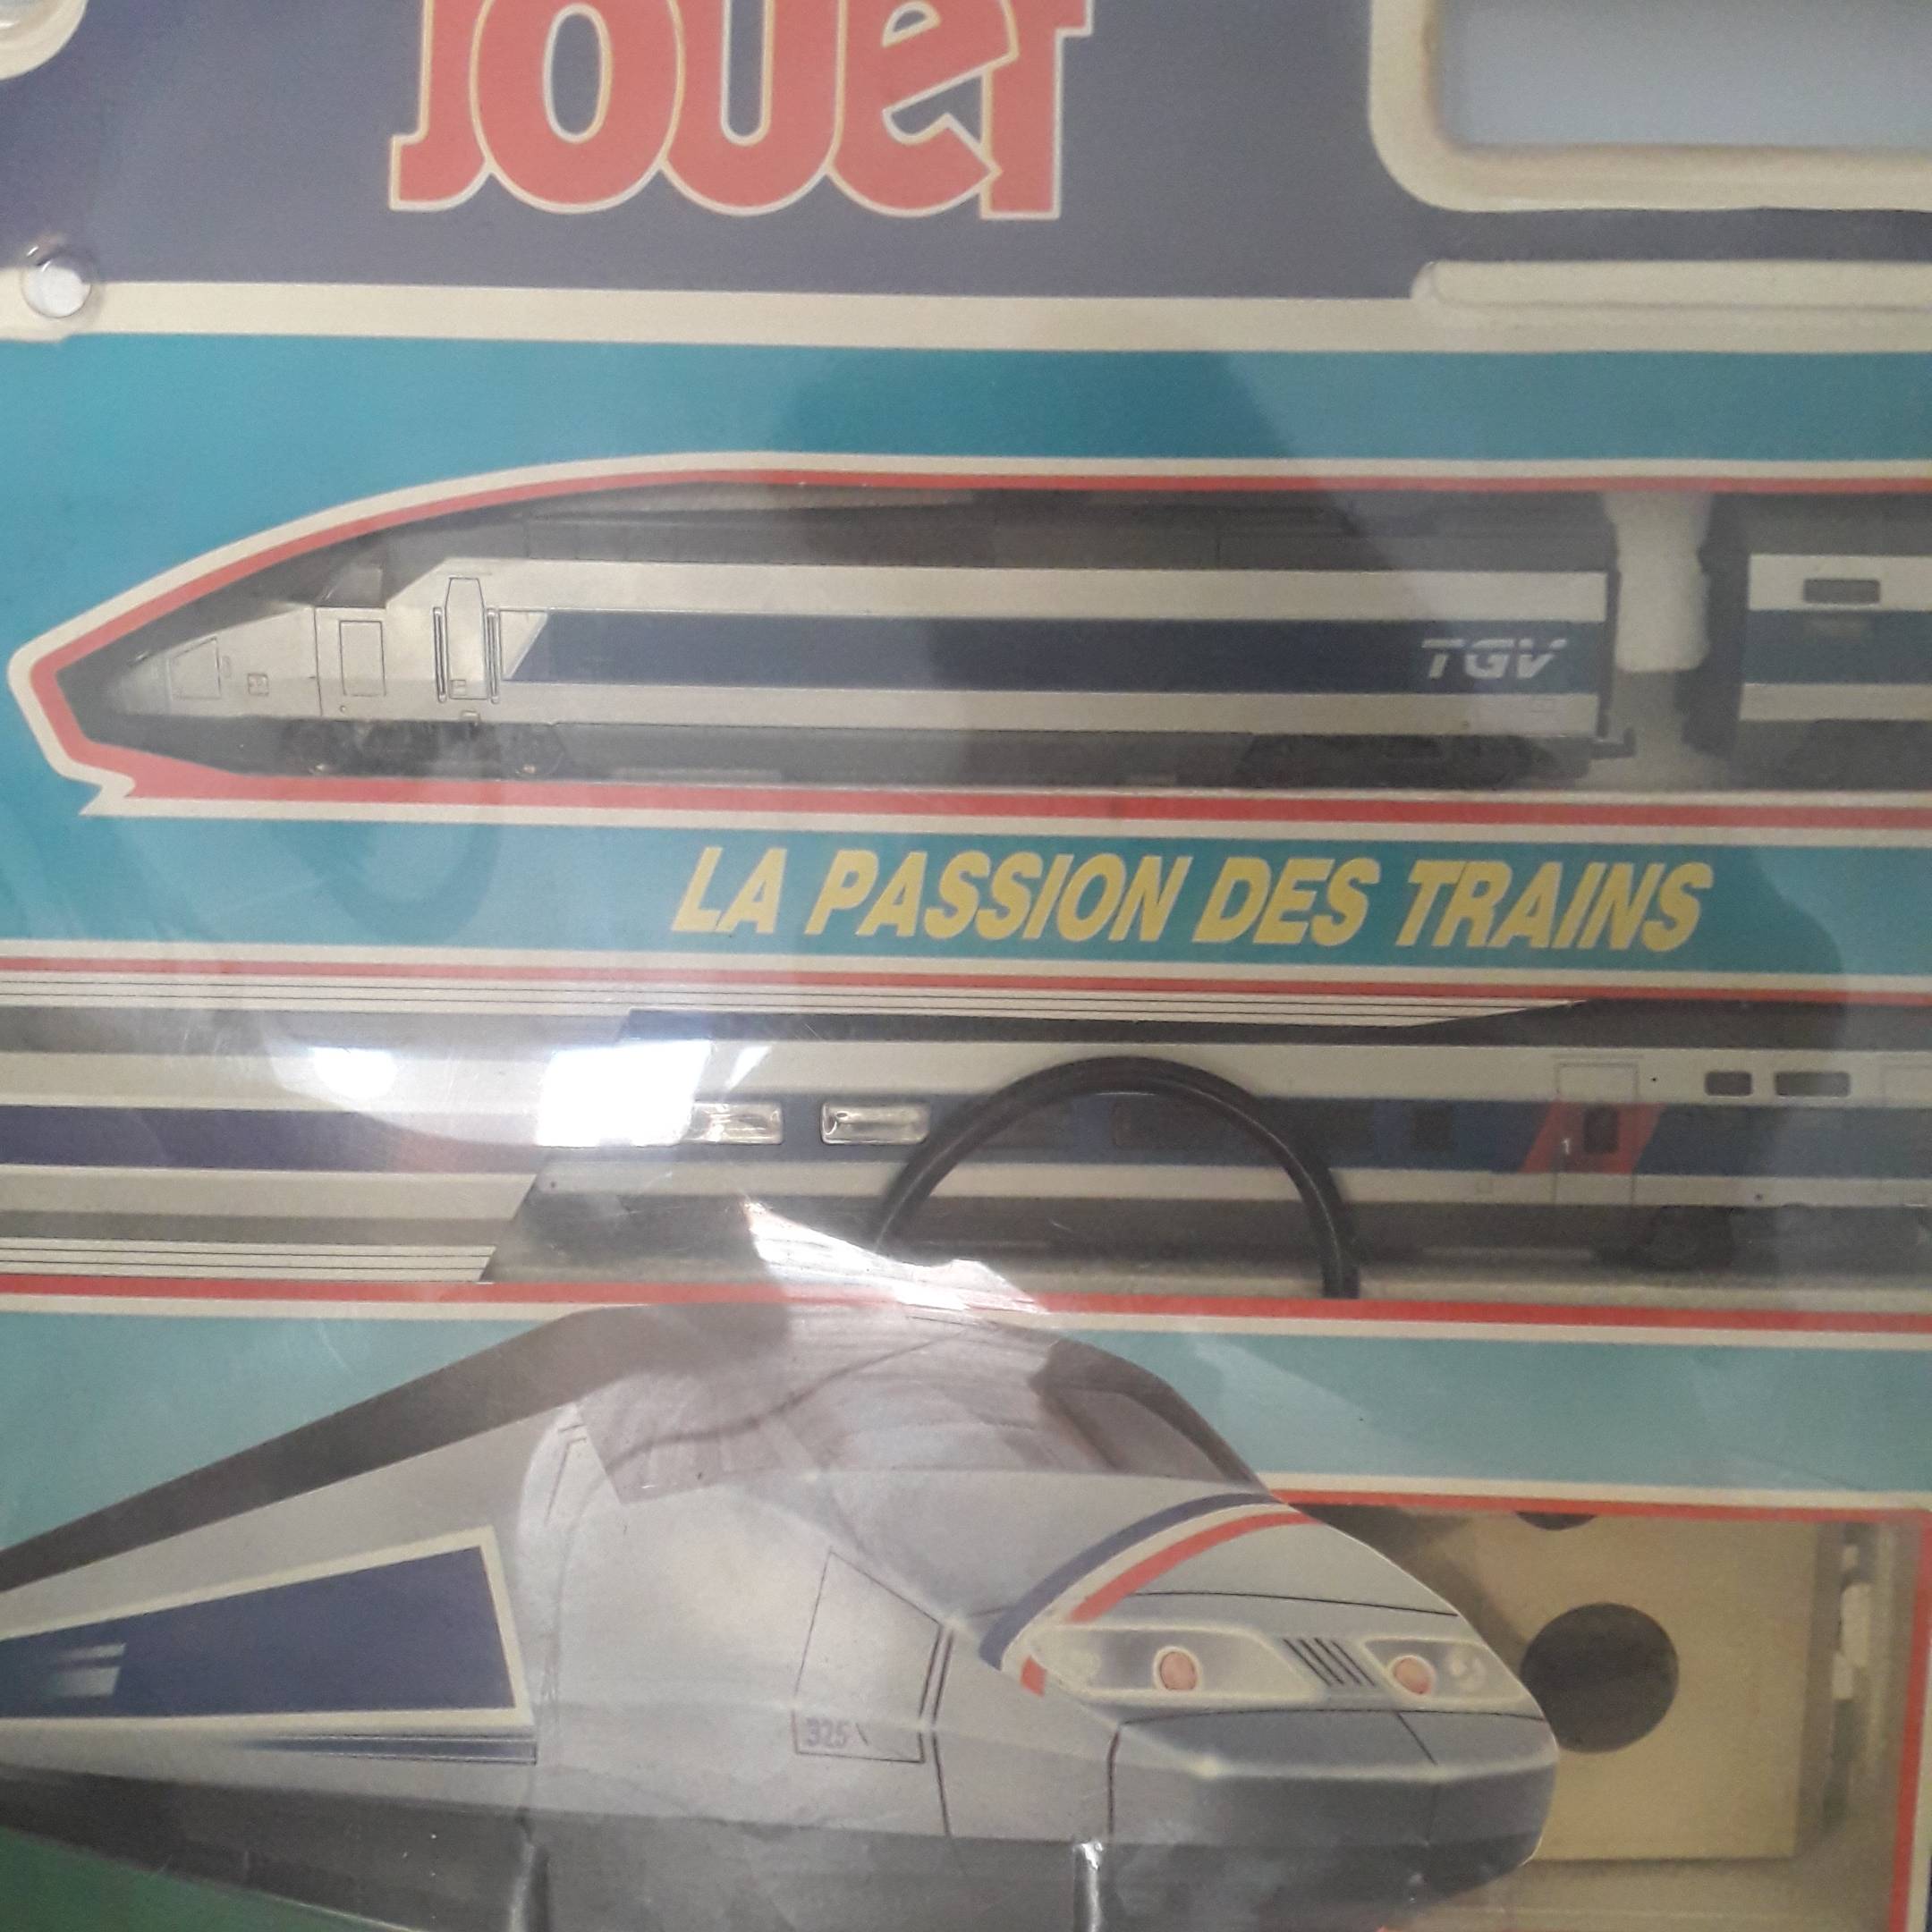 Jouets train électrique TGV atlantique record 515km/h, Jouef